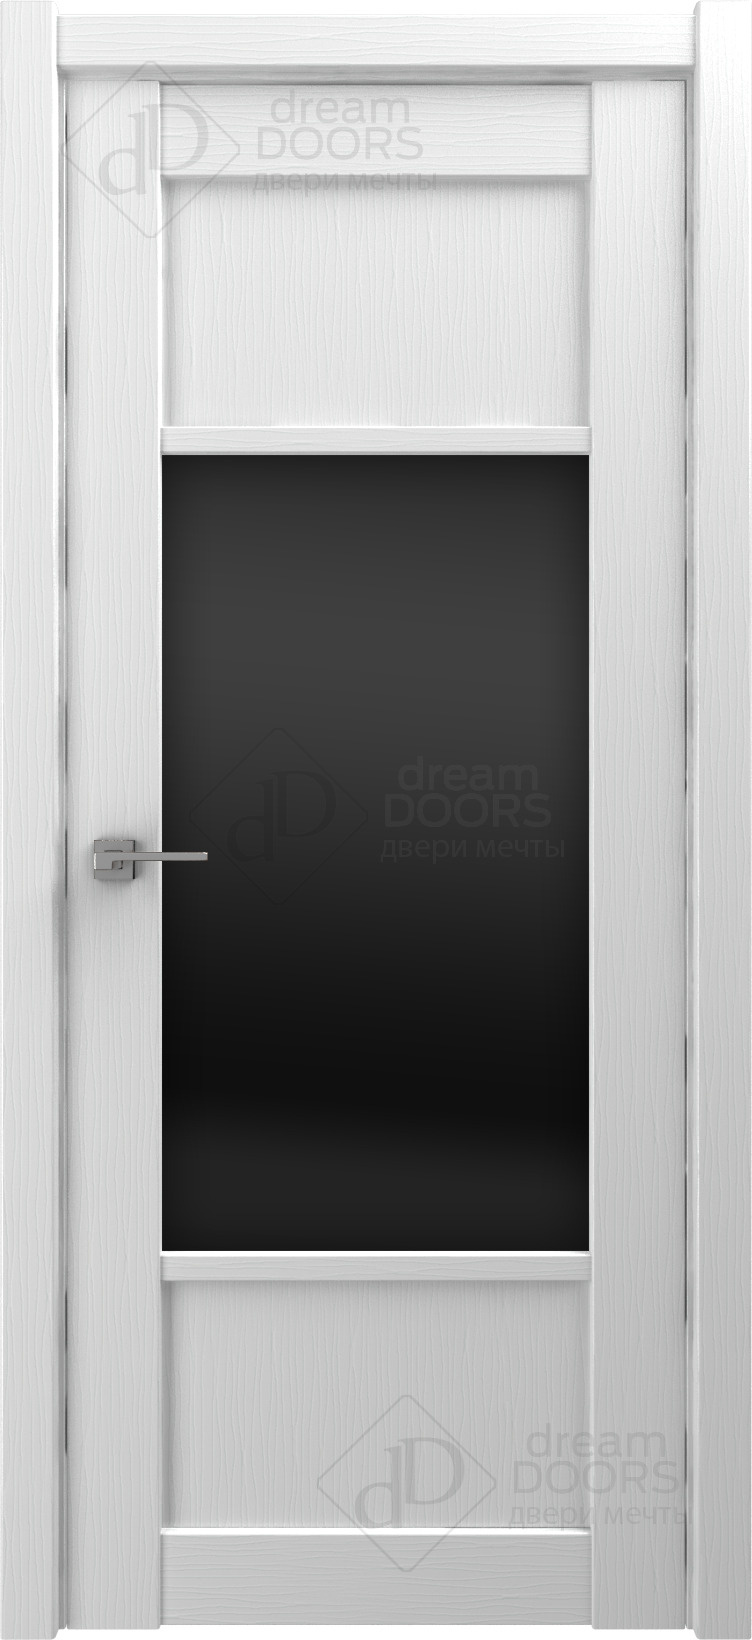 Dream Doors Межкомнатная дверь V26, арт. 18243 - фото №3